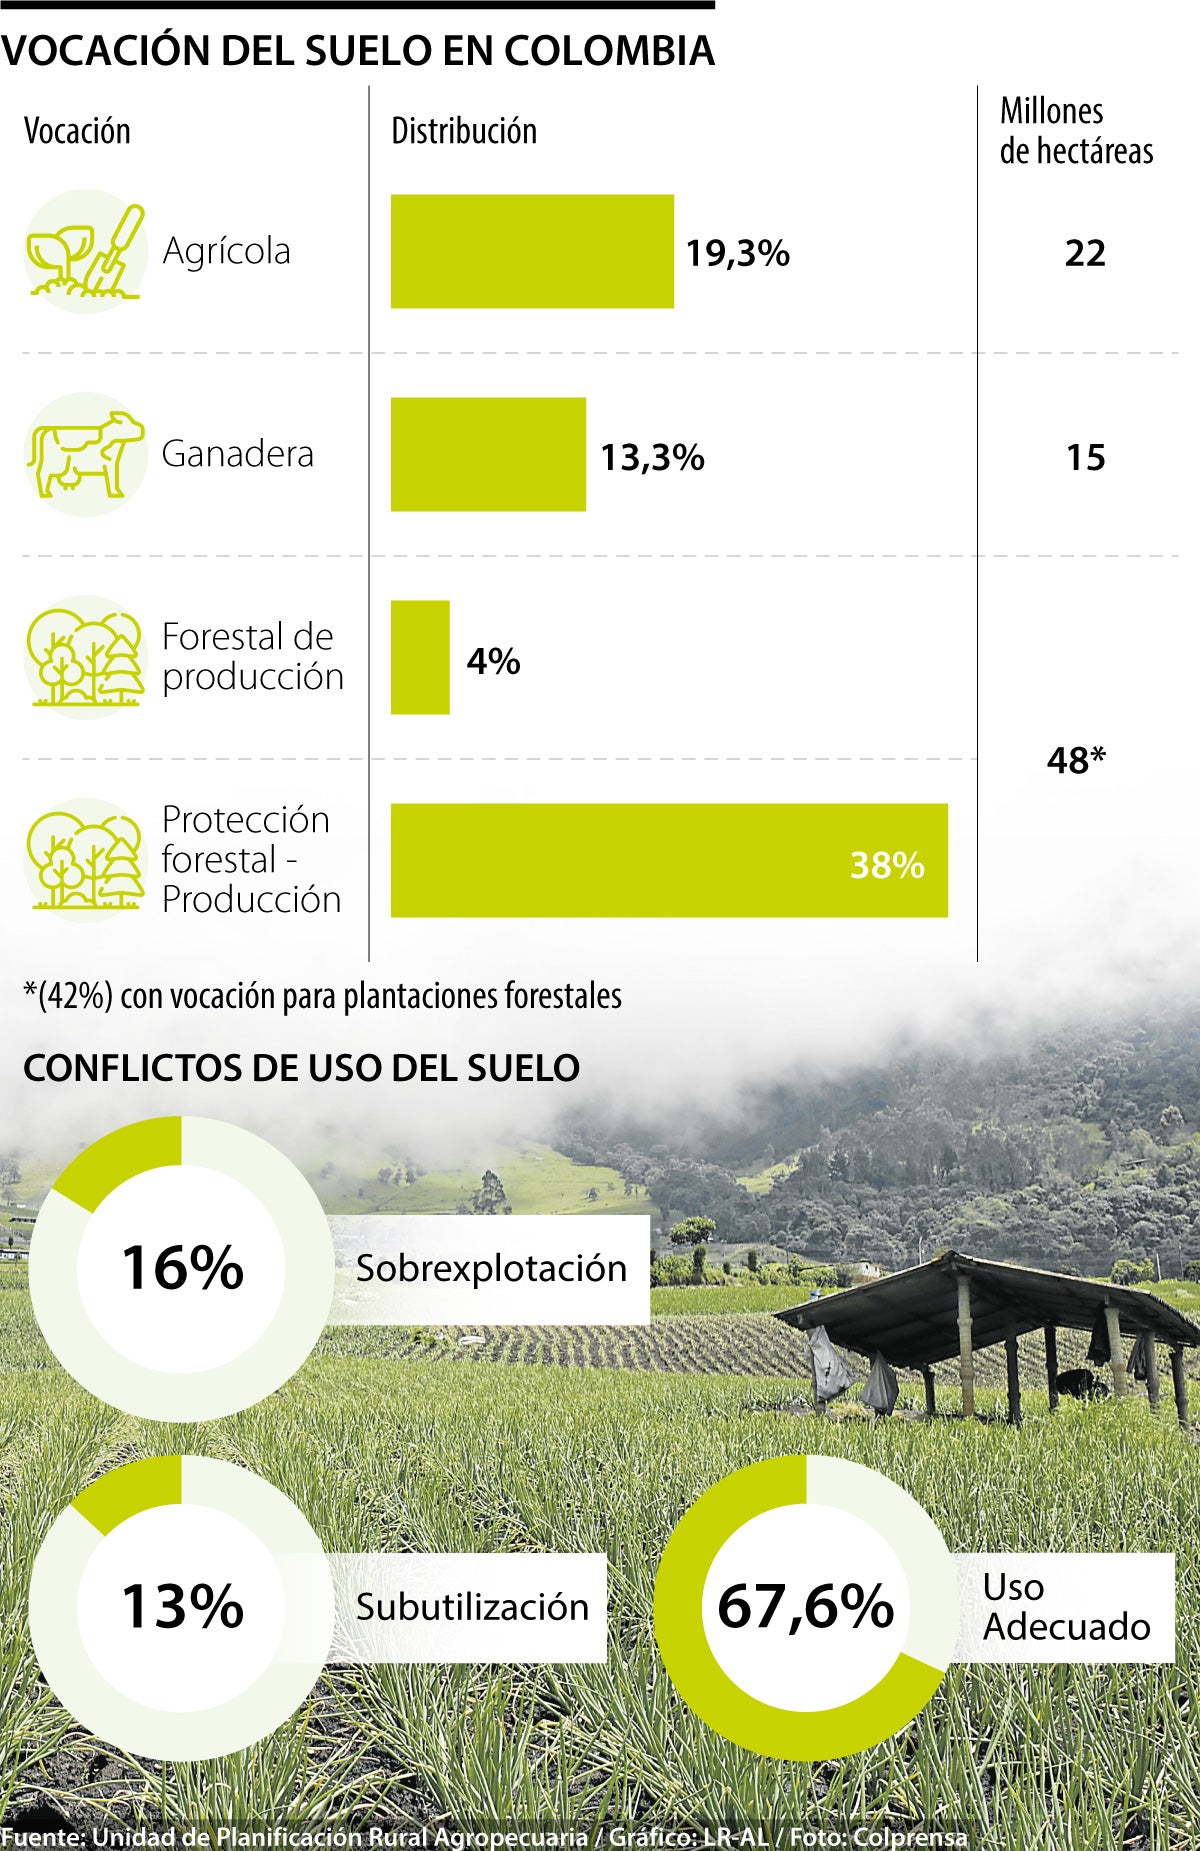 Vocación de suelos en Colombia